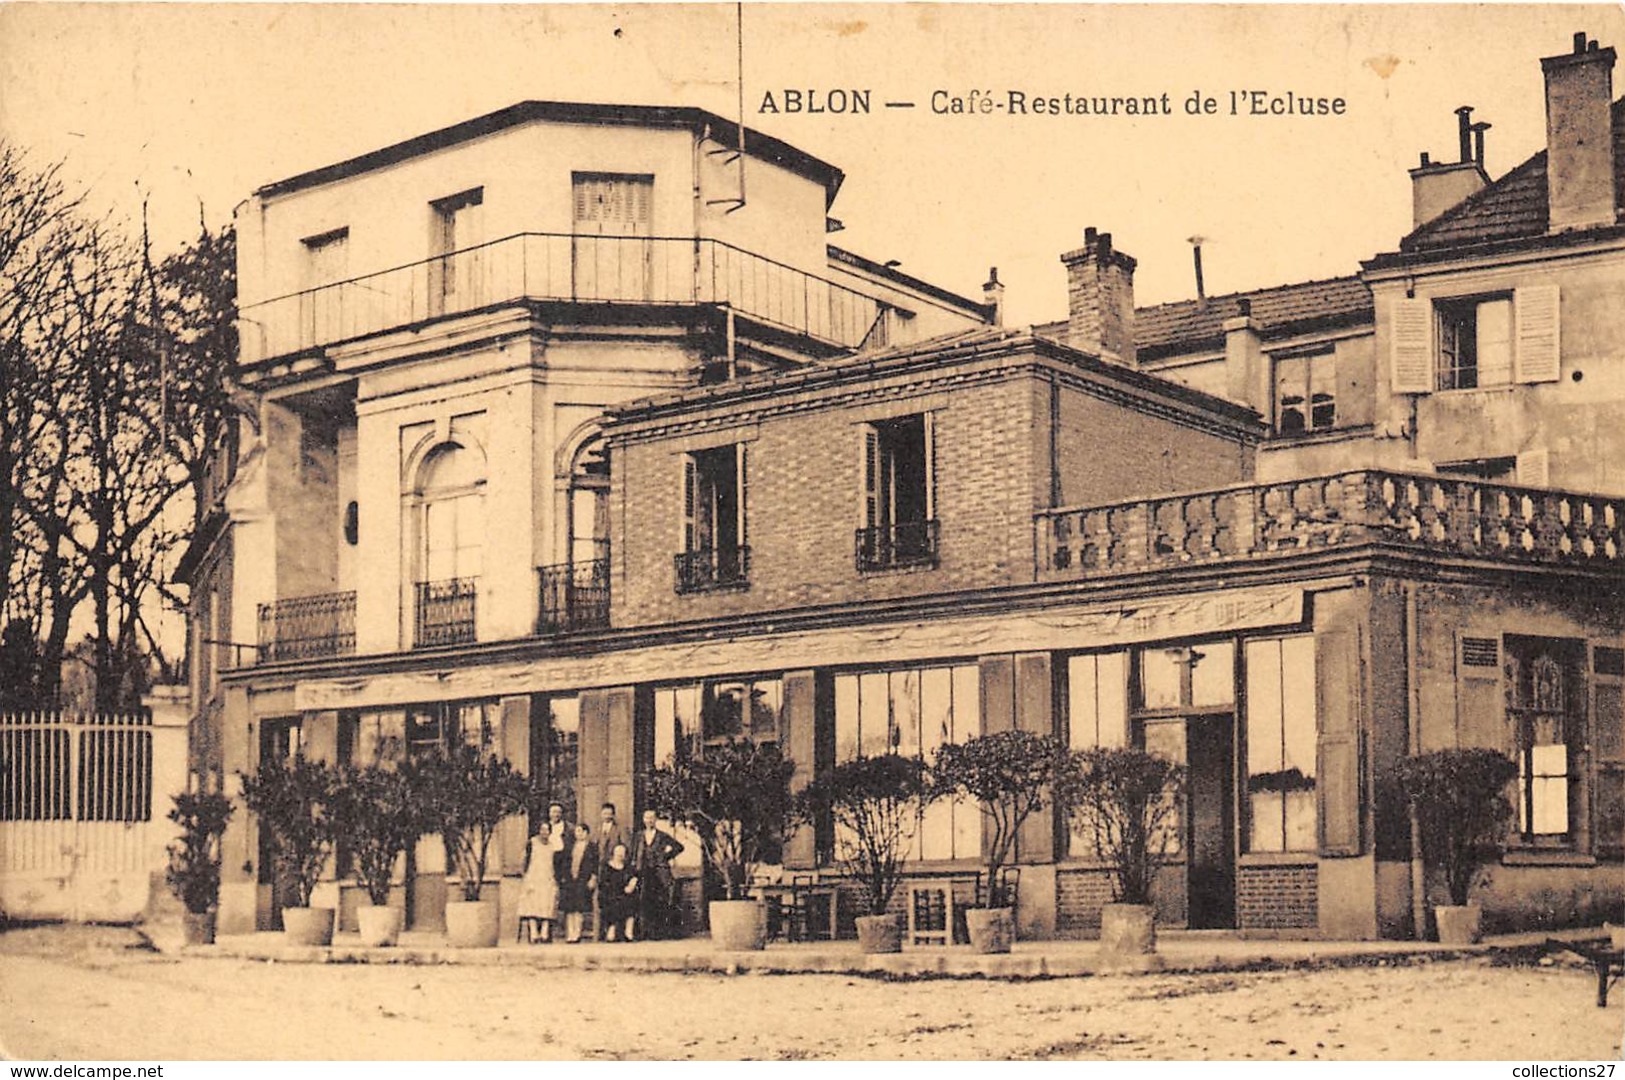 94-ABLON- CAFE-RESTAURANT DE L'ECLUSE - Ablon Sur Seine